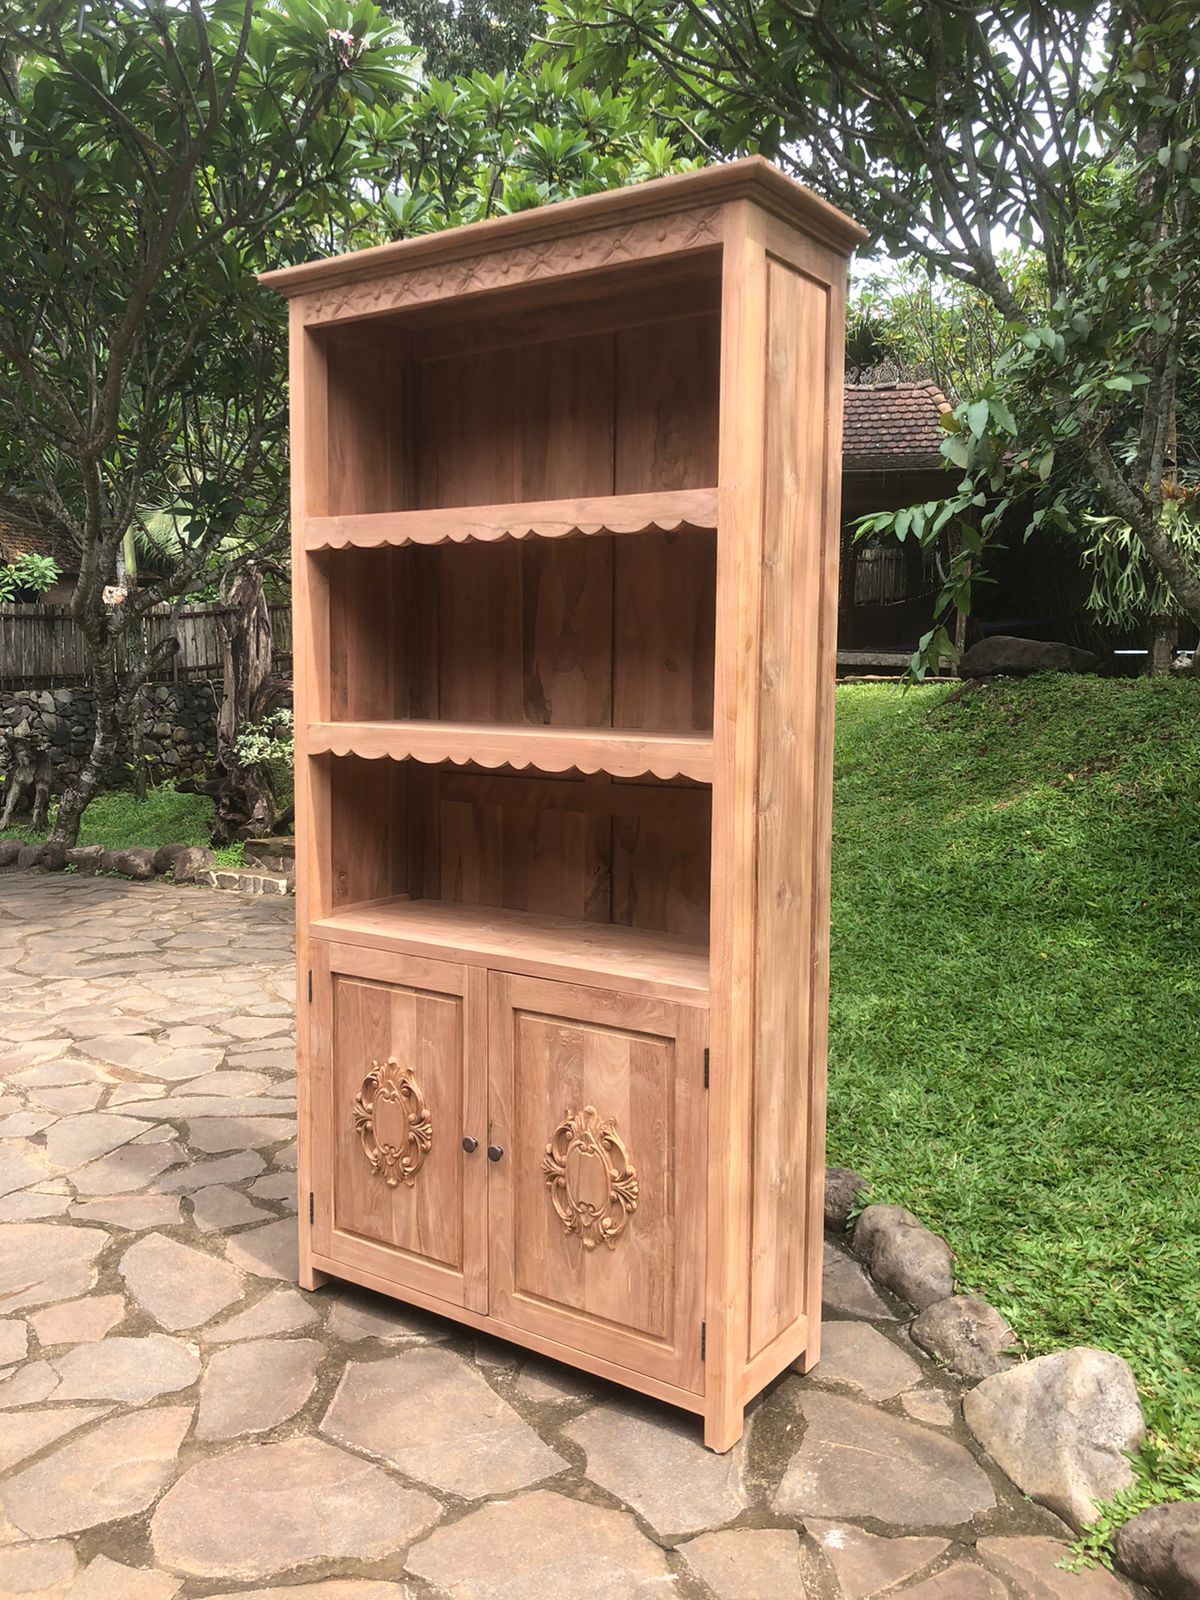 ספרייה כפרית נגרות עבודת יד עץ מלא טיק במחיר מבצע: 4,200 ש"ח